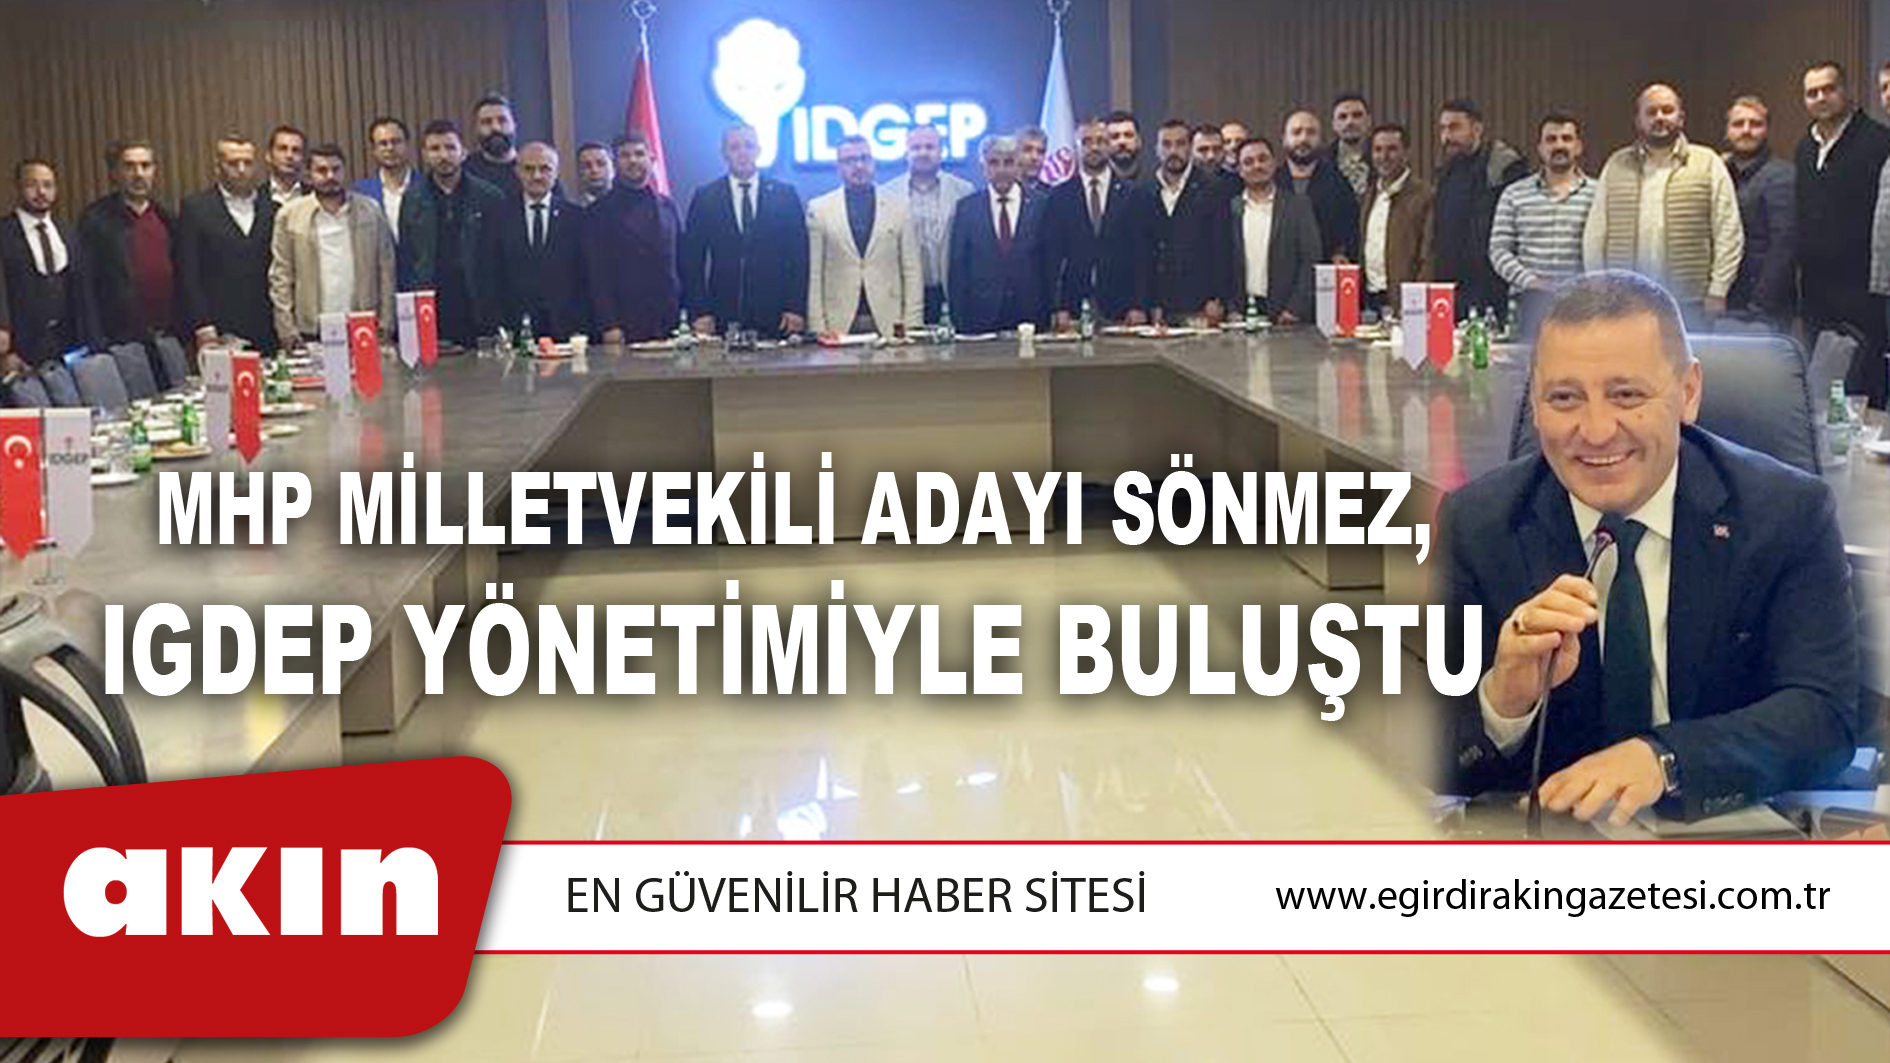 MHP Milletvekili Adayı Sönmez, IGDEP Yönetimiyle Buluştu